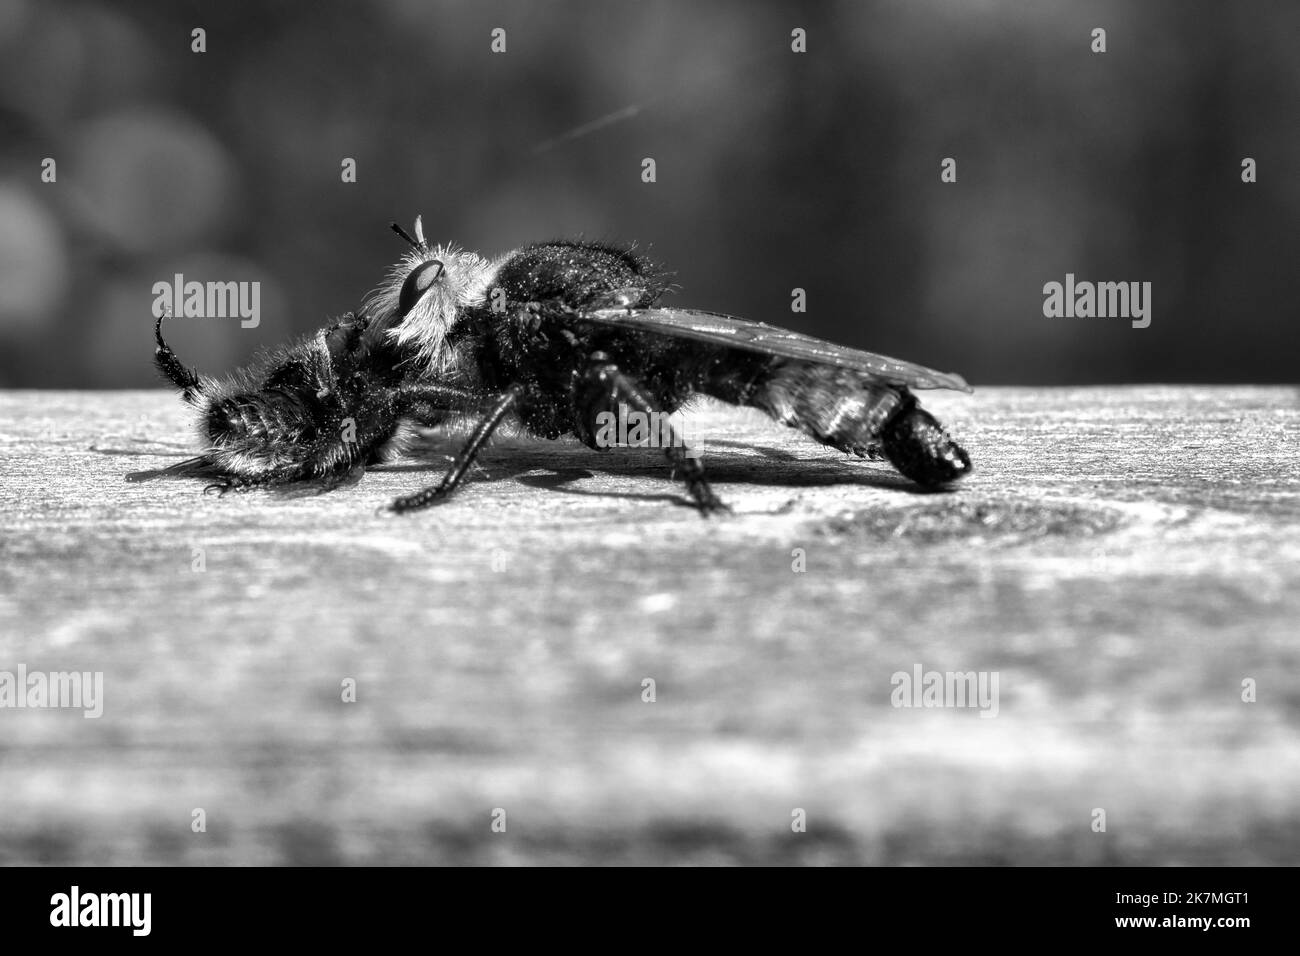 La mosca gialla dell'omicidio o la mosca gialla del ladro come immagine nera e bianca con un bumblebee come preda. L'insetto viene risucchiato dal cacciatore. Peli neri gialli c Foto Stock